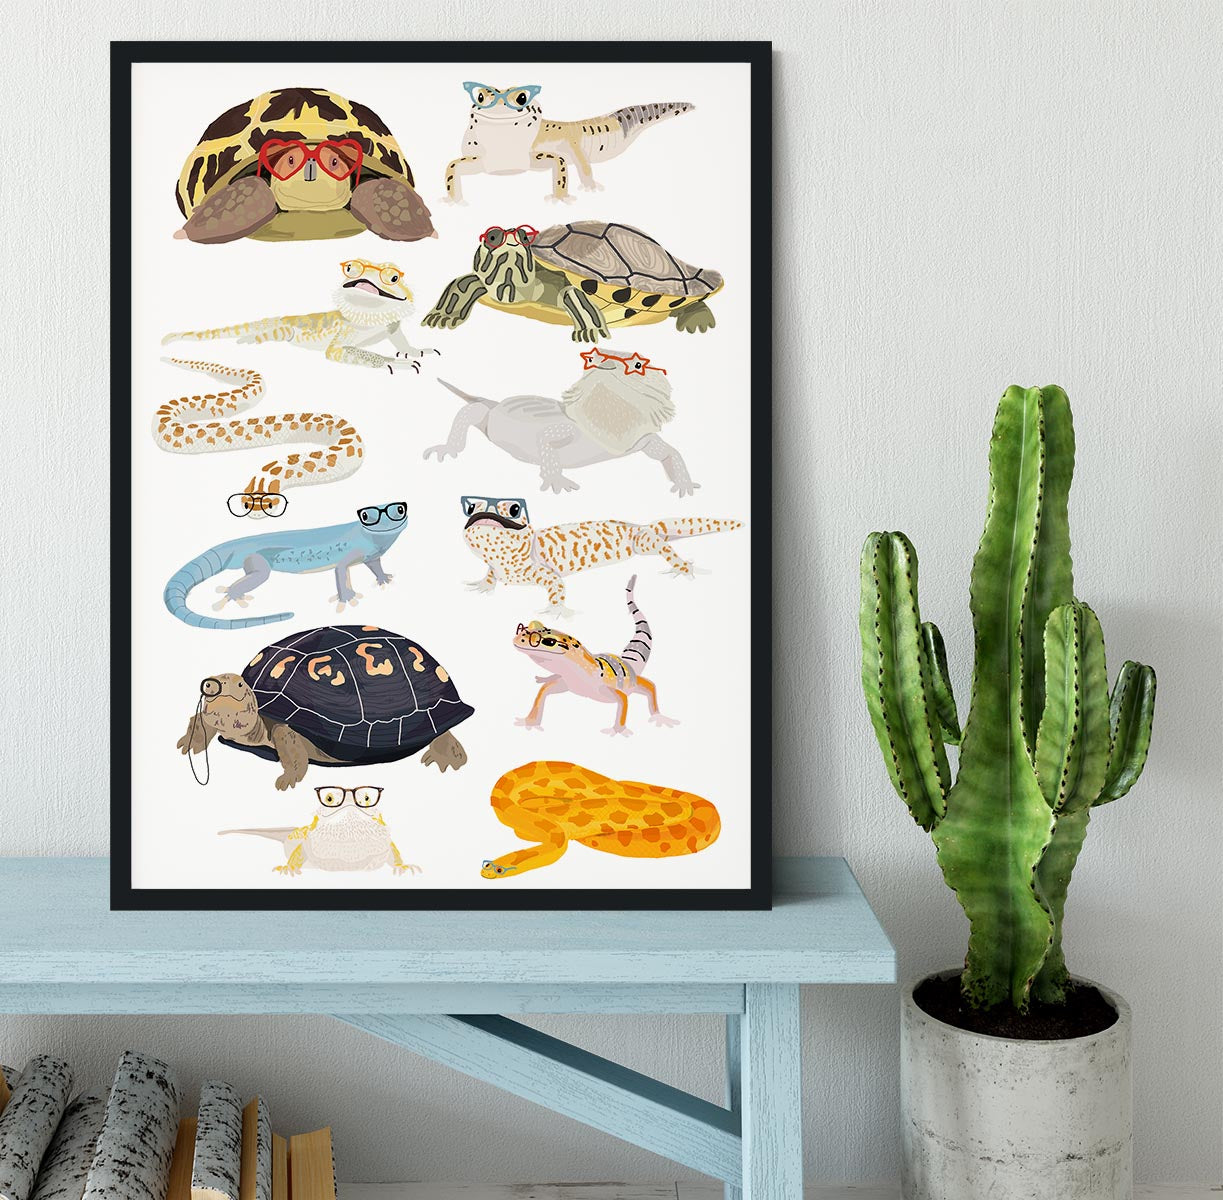 12 Reptiles In Glasses Framed Print - 1x - 2